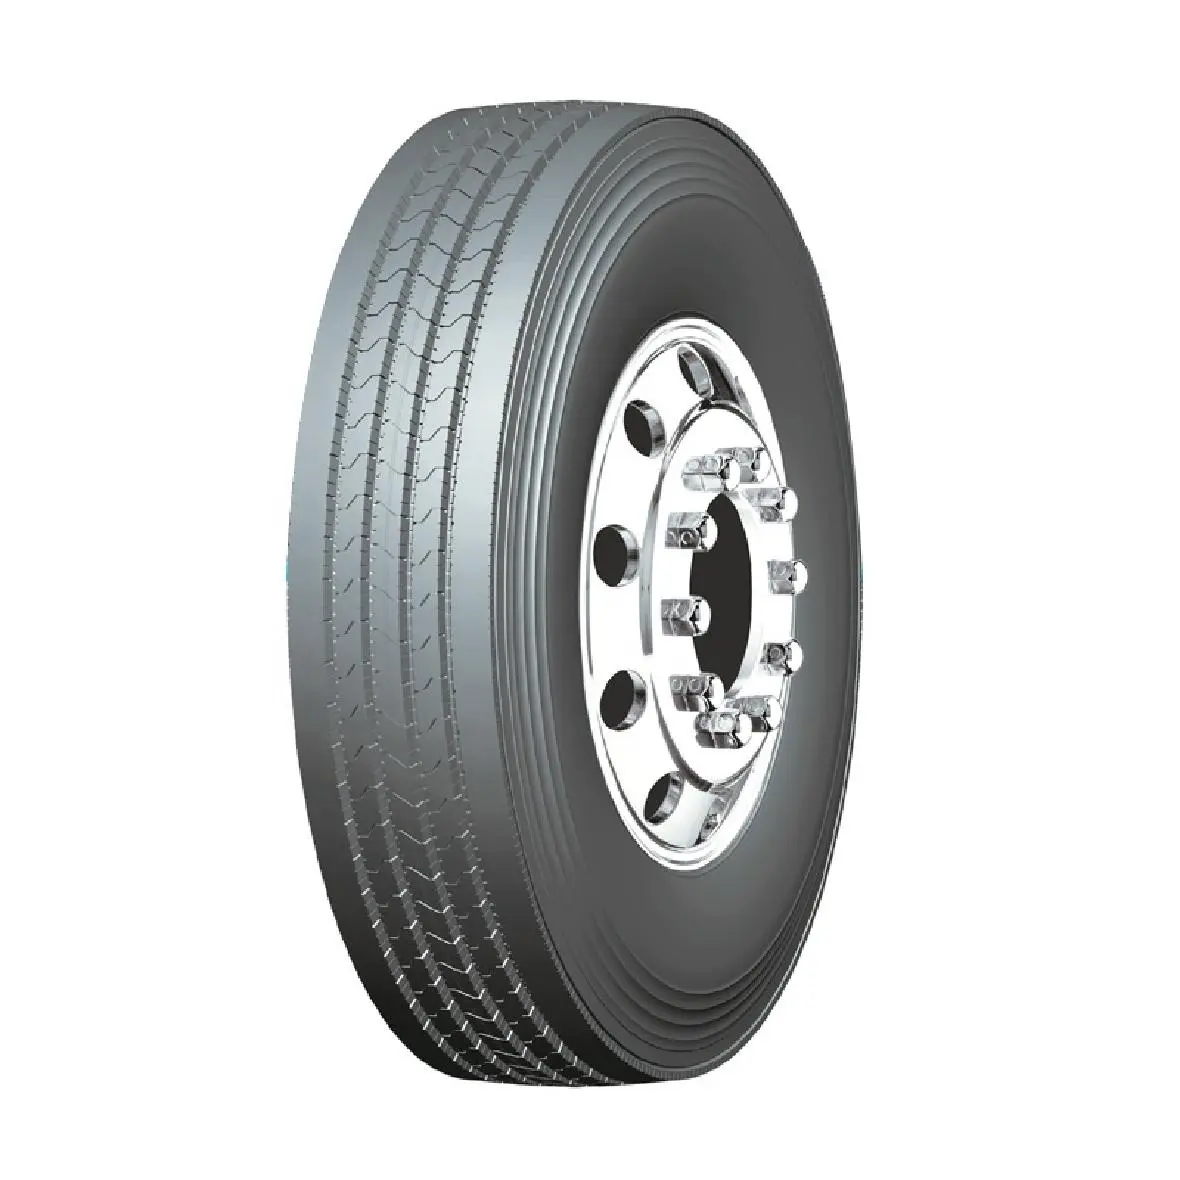 Neumáticos radiales para camiones, llantas para camiones 11r 22,5 11r 24,5 a la venta en EE. UU./México con DOT,NOM,Smartway, aprobado por ECE